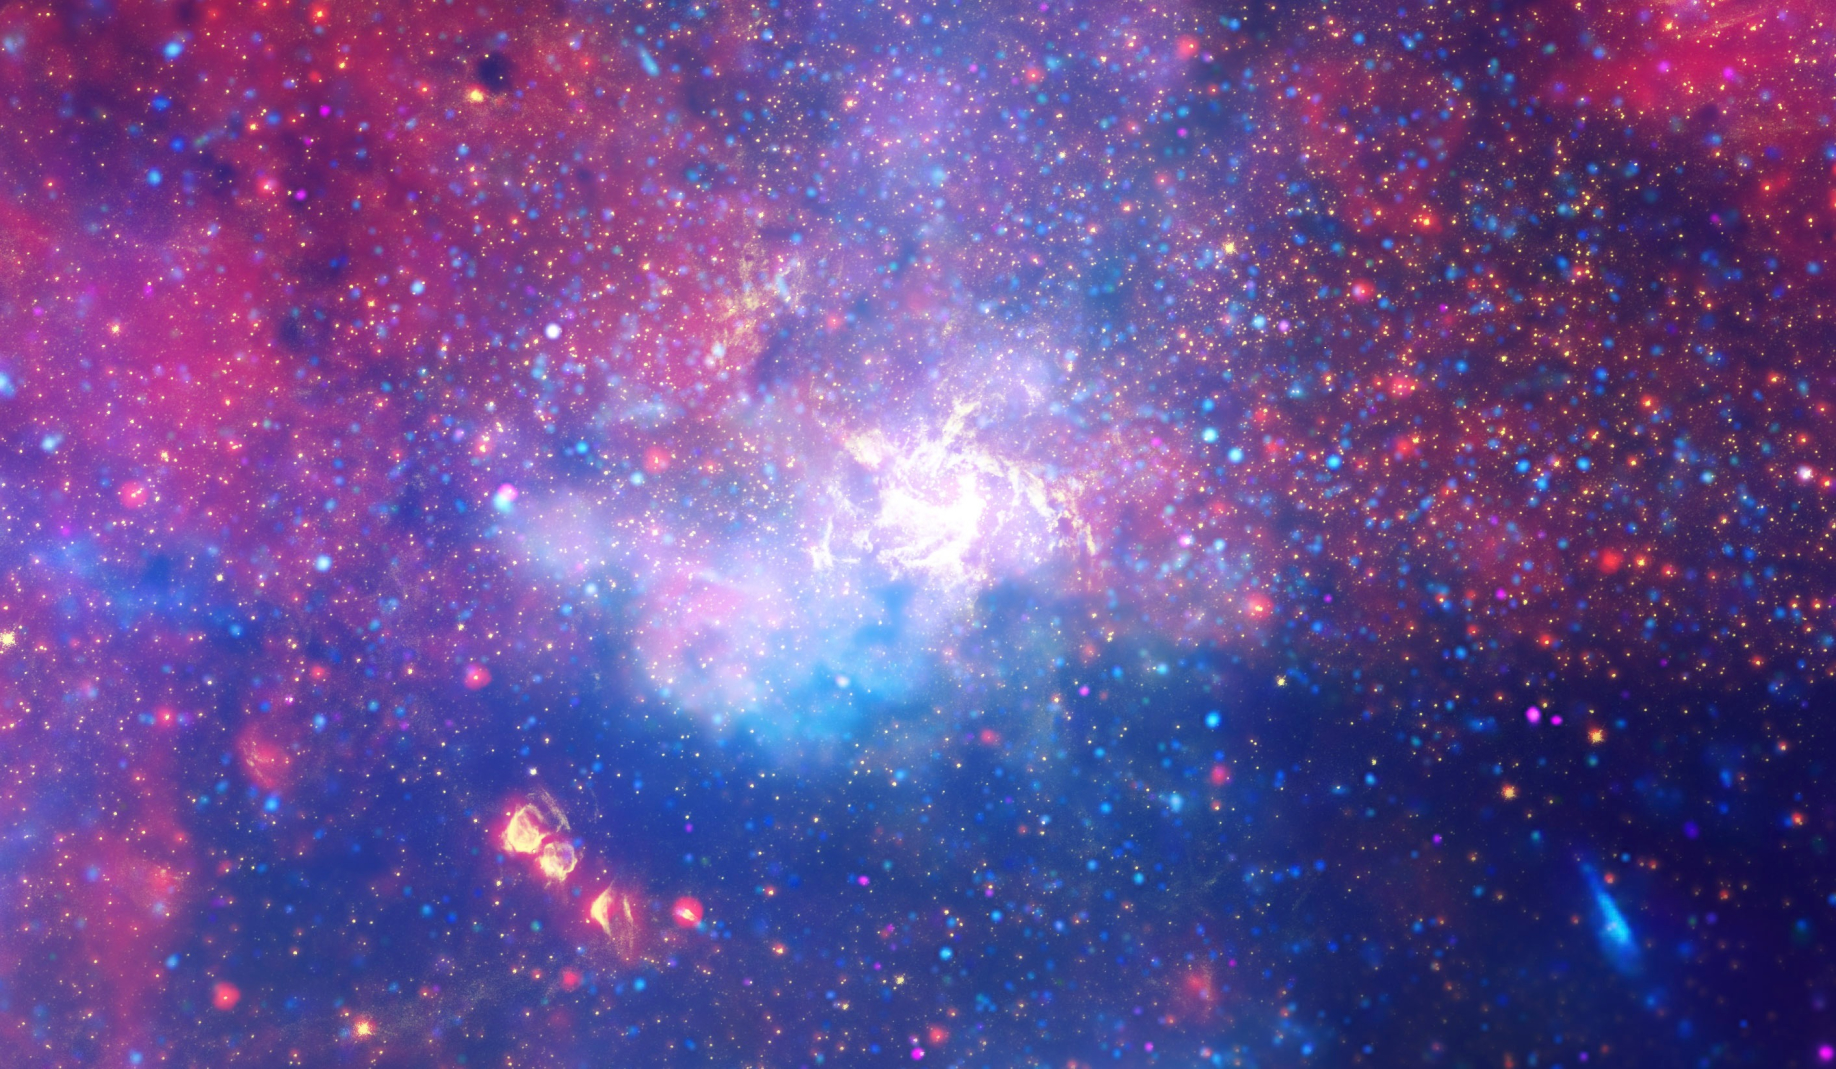 Ogroman vrtlog vrućeg plina koji svijetli infracrvenom svjetlošću, označavajući približnu lokaciju supermasivne crne rupe u srcu naše galaksije Mliječni put. Vizualno obrađena verzija slike koju je snimio Hubble 2009. godine (©NASA/ ESA/ SSC/ CXC/ STScI).